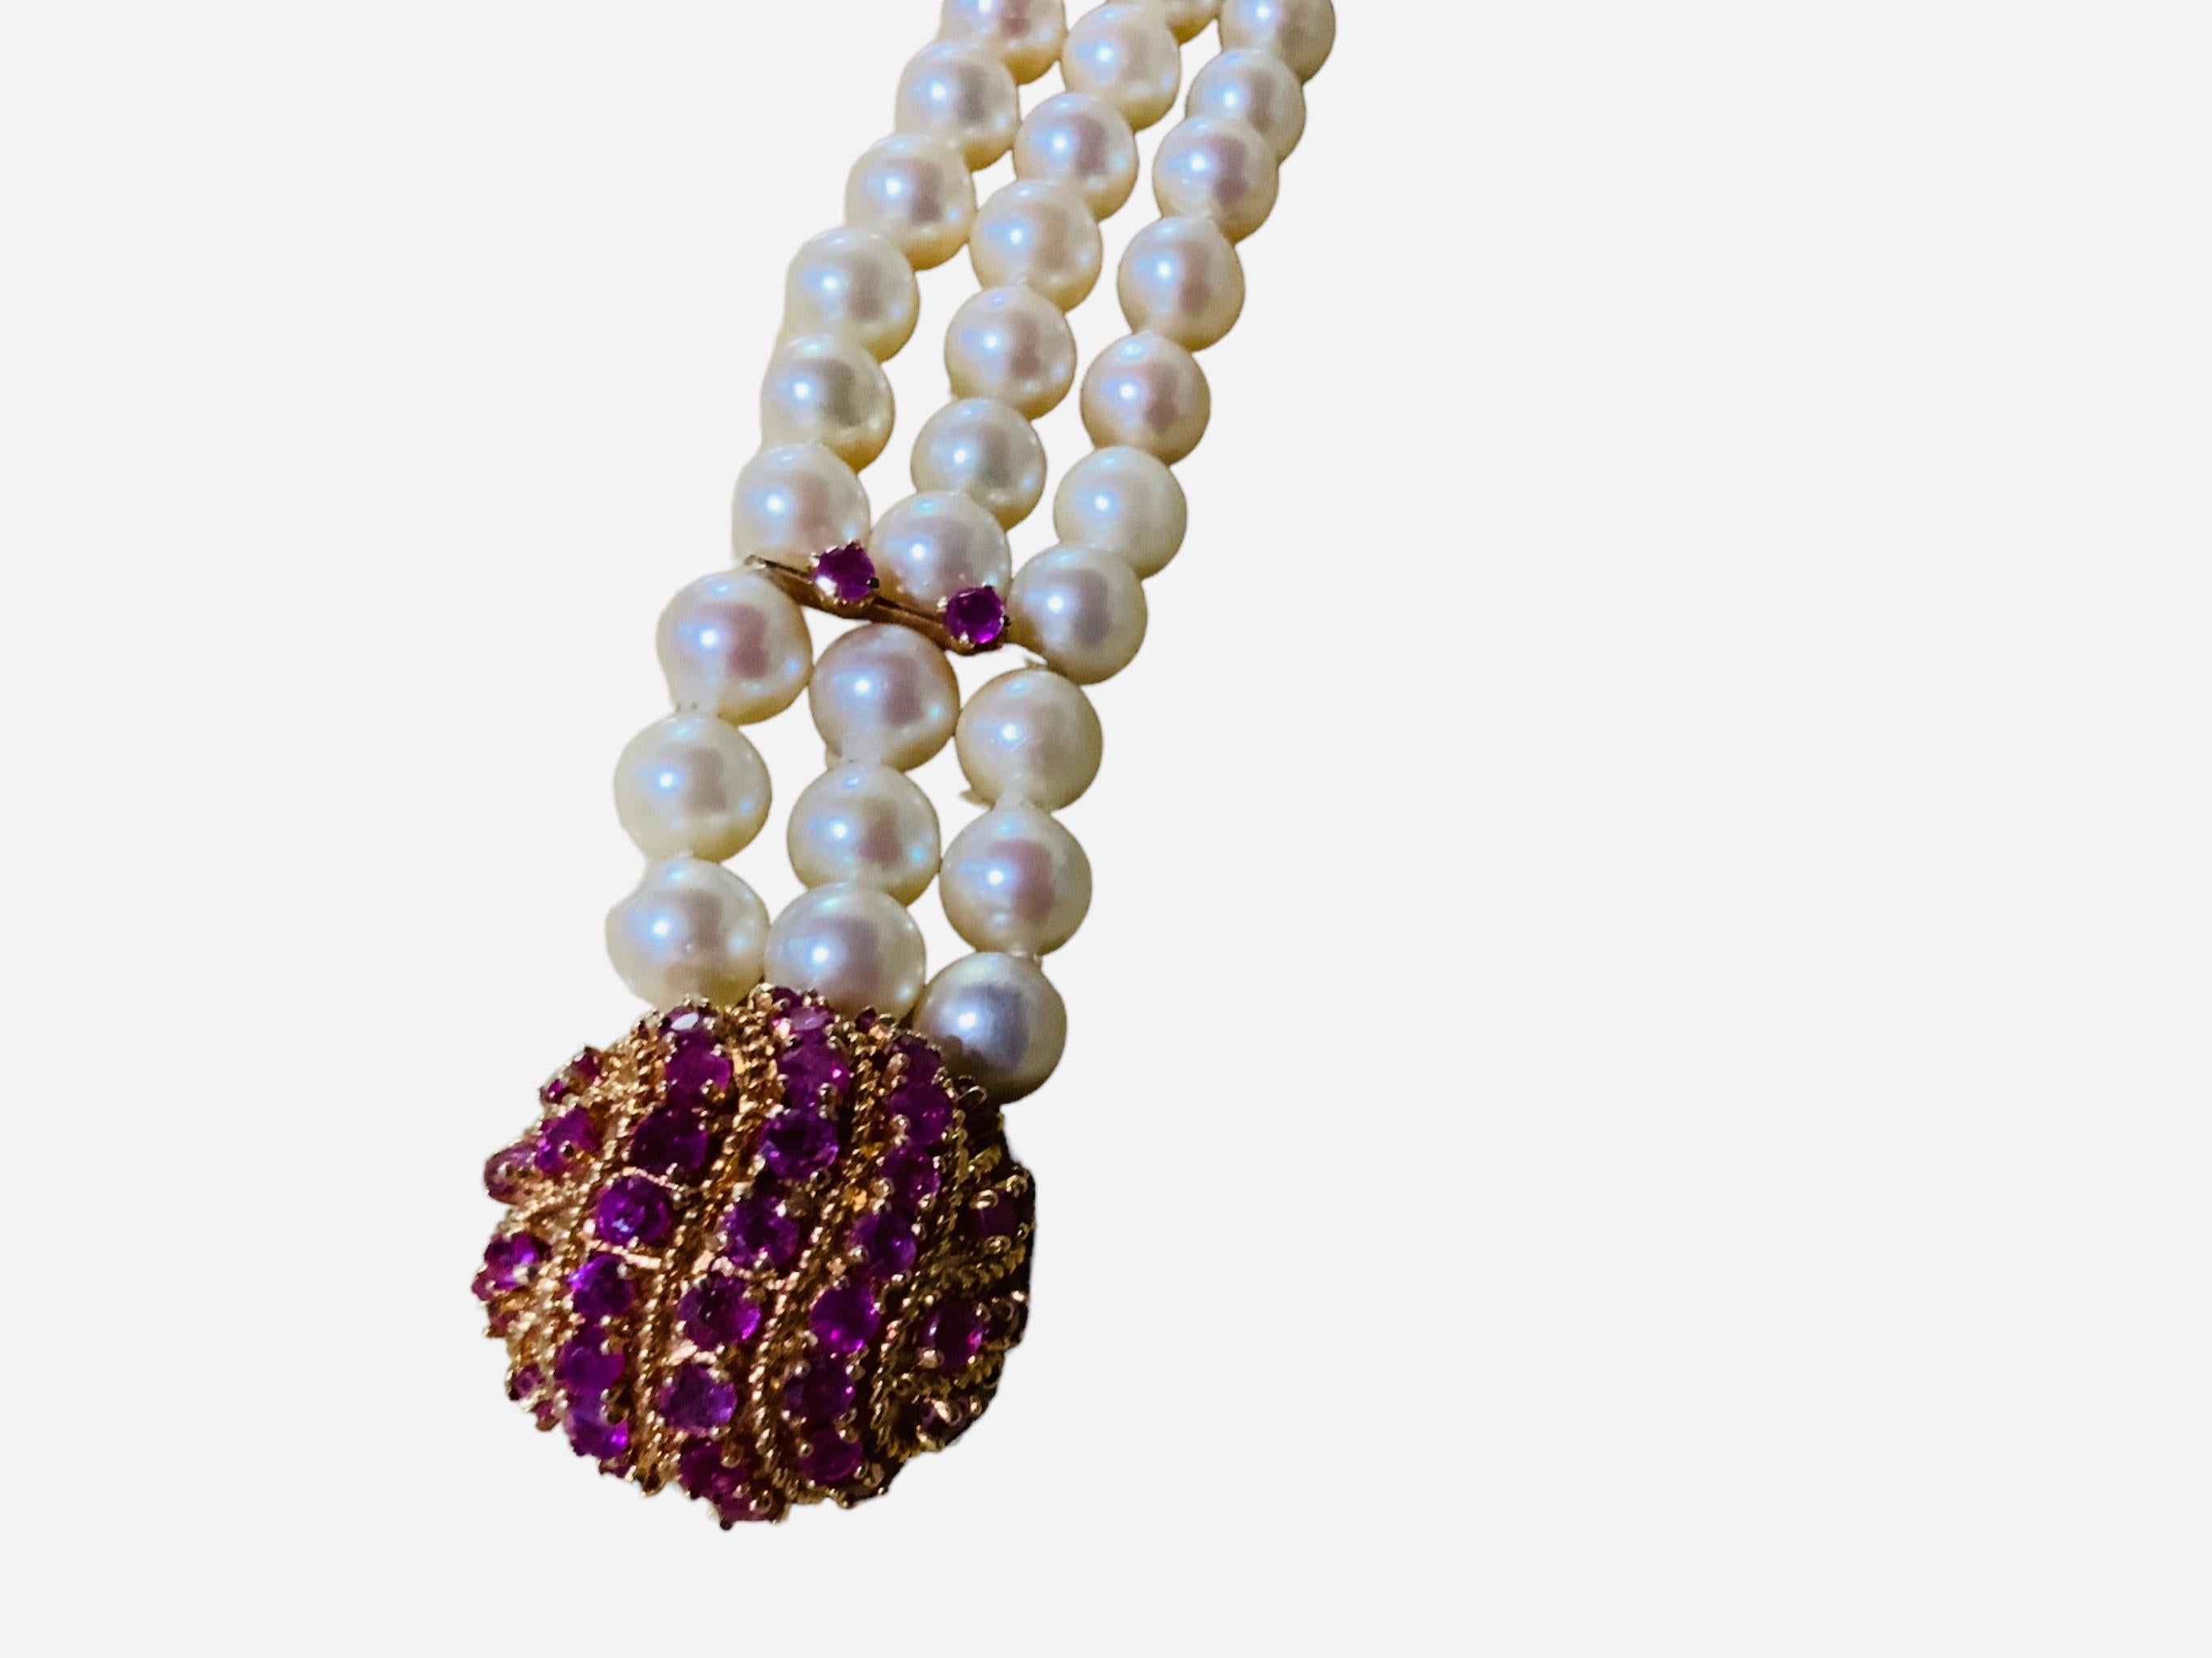 Dies ist eine japanische 14K Gold Kultur Perlen und Rubine Armband. Es zeigt drei Perlenstränge mit insgesamt 60 Perlen. Jede Perle misst zwischen 7,0 und 7,4 mm pro Stück. Zwei Rubine (3,1 mm Durchmesser) in 14-karätiger Goldzackenfassung schmücken